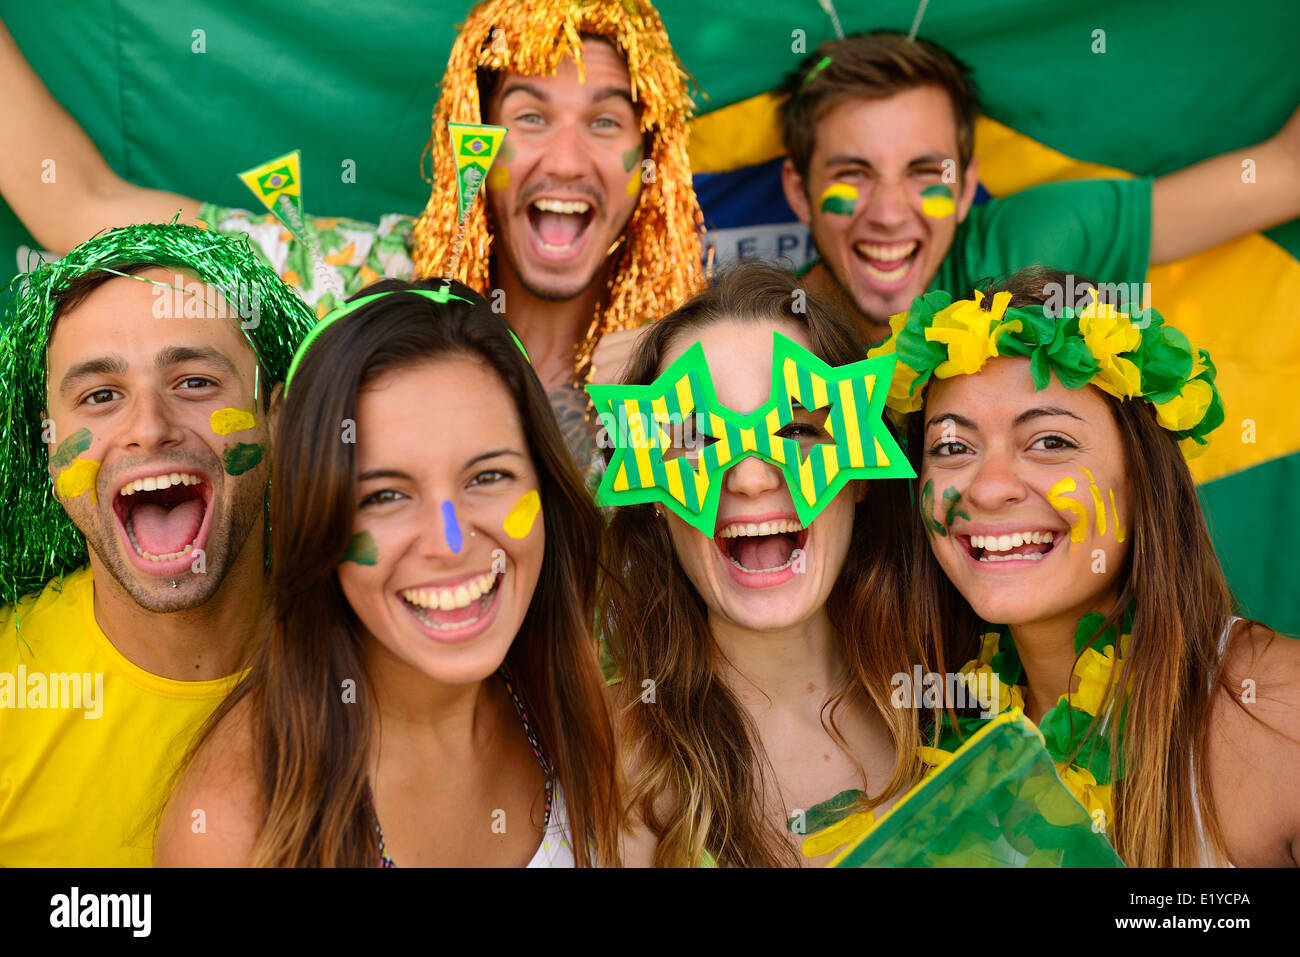 Brazilian People